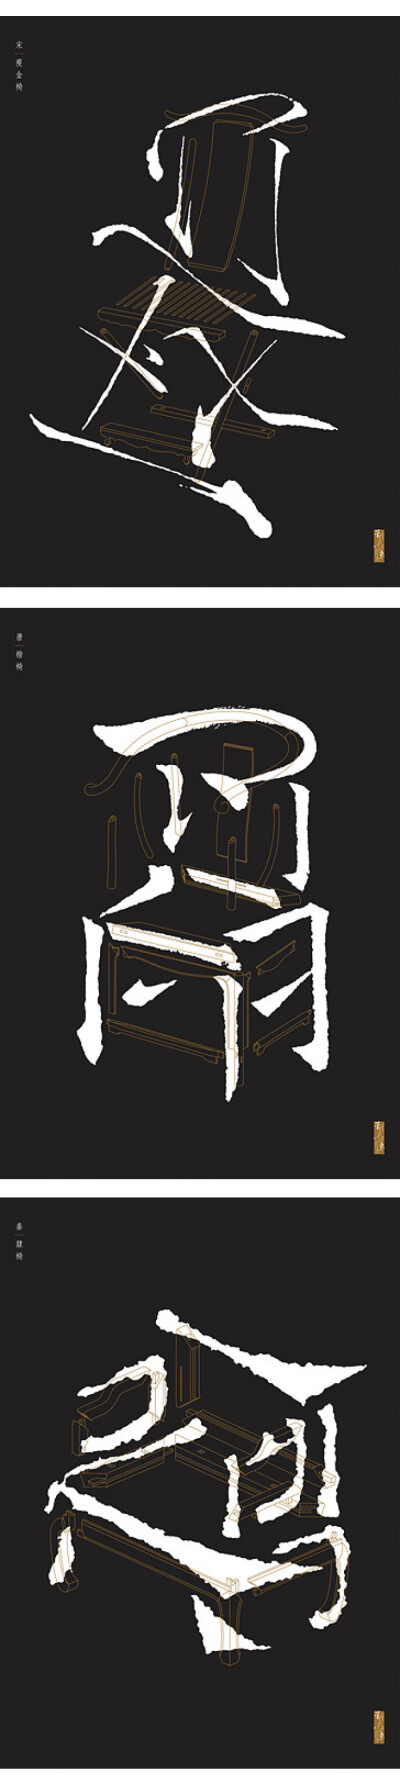 书法椅/Chairligraphy系列 获得2011年红点设计大奖，作者：香港刘小康先生